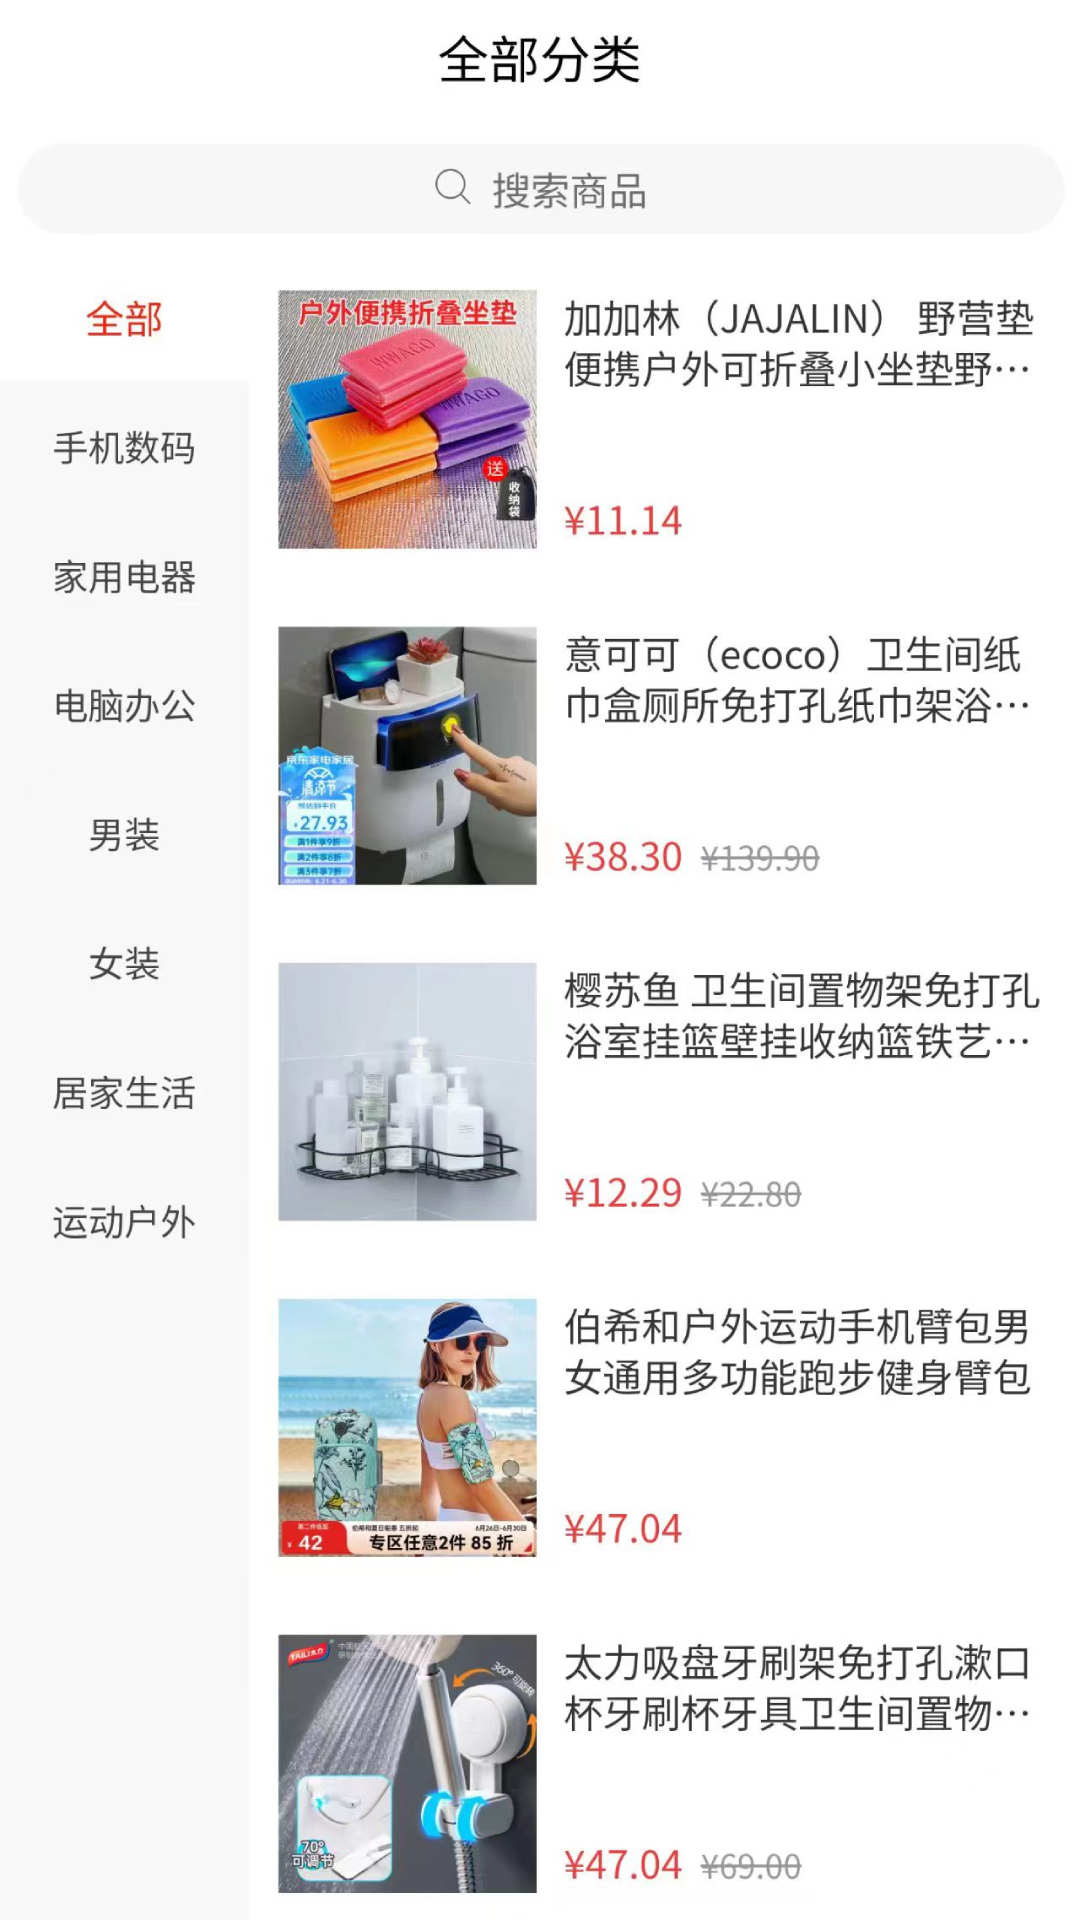 怡湘快乐购app下载,怡湘快乐购app官方版 v1.0.2